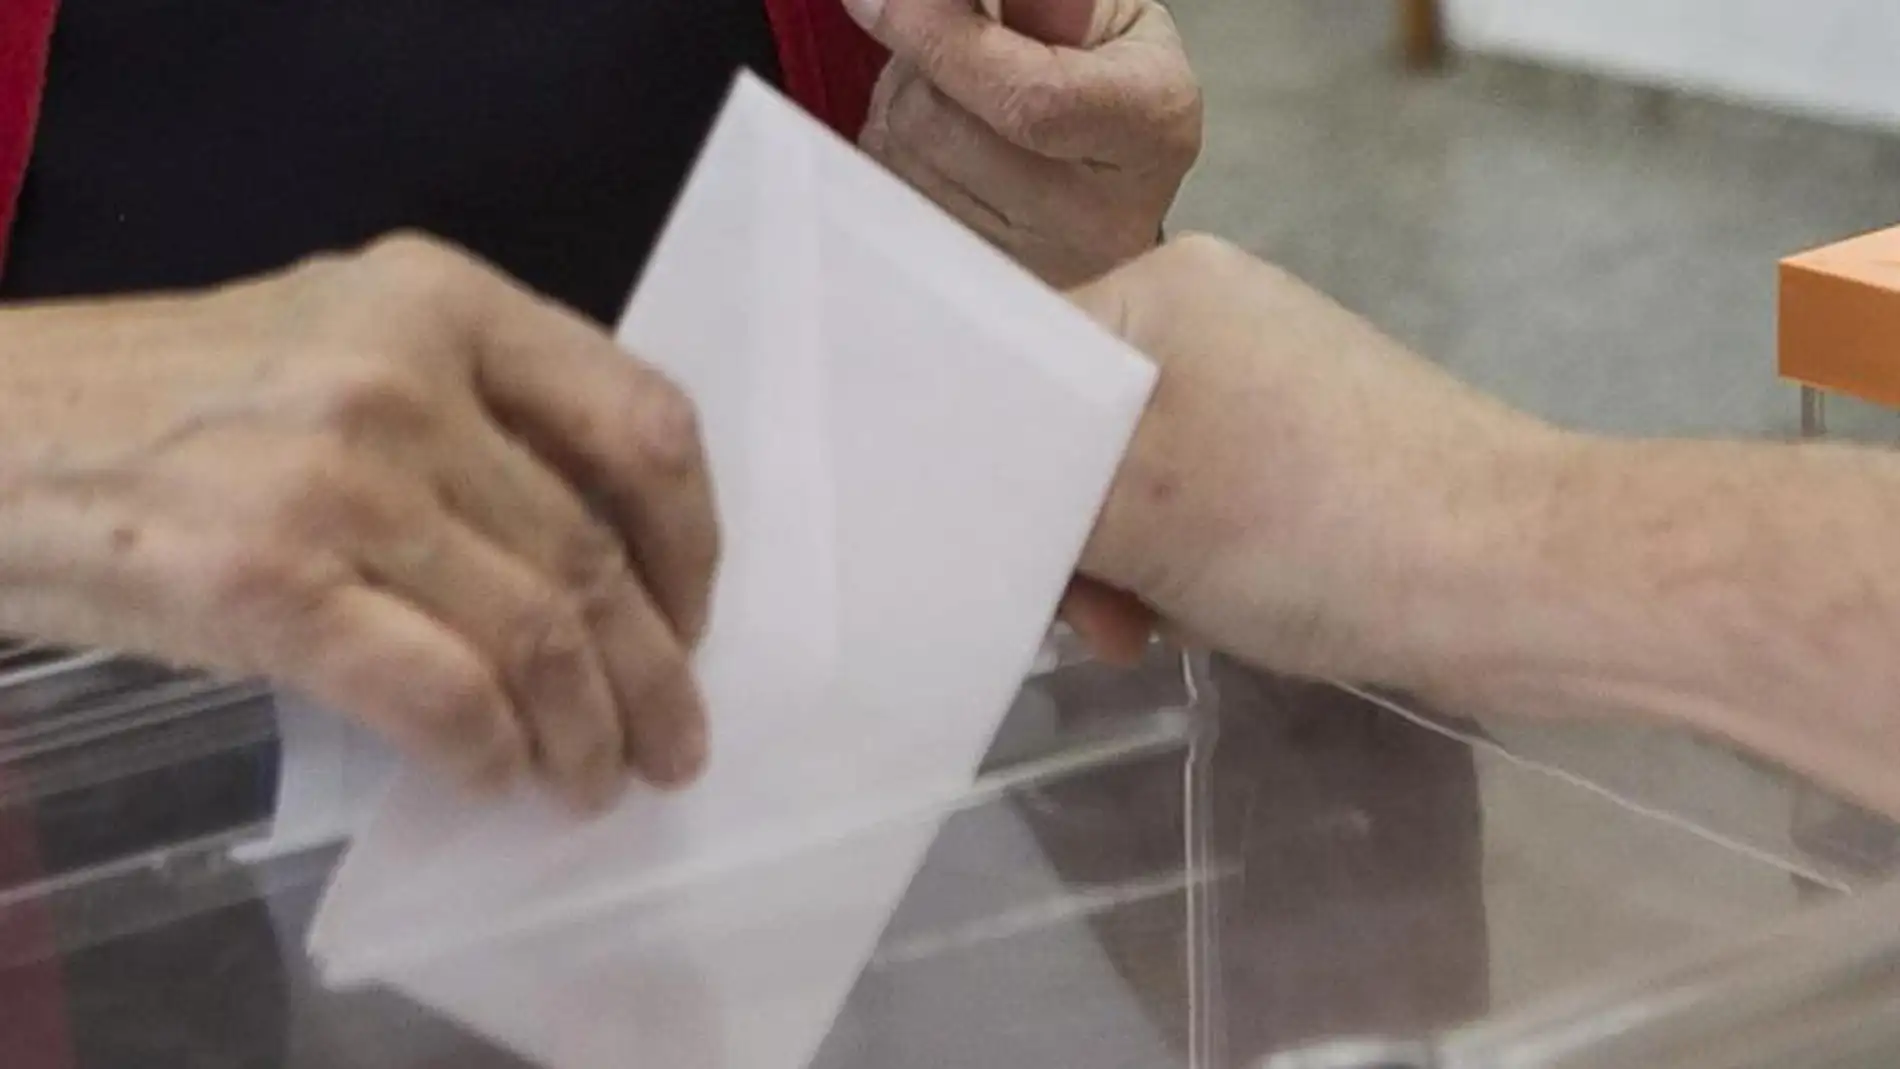 Una persona deposita su voto en unas elecciones